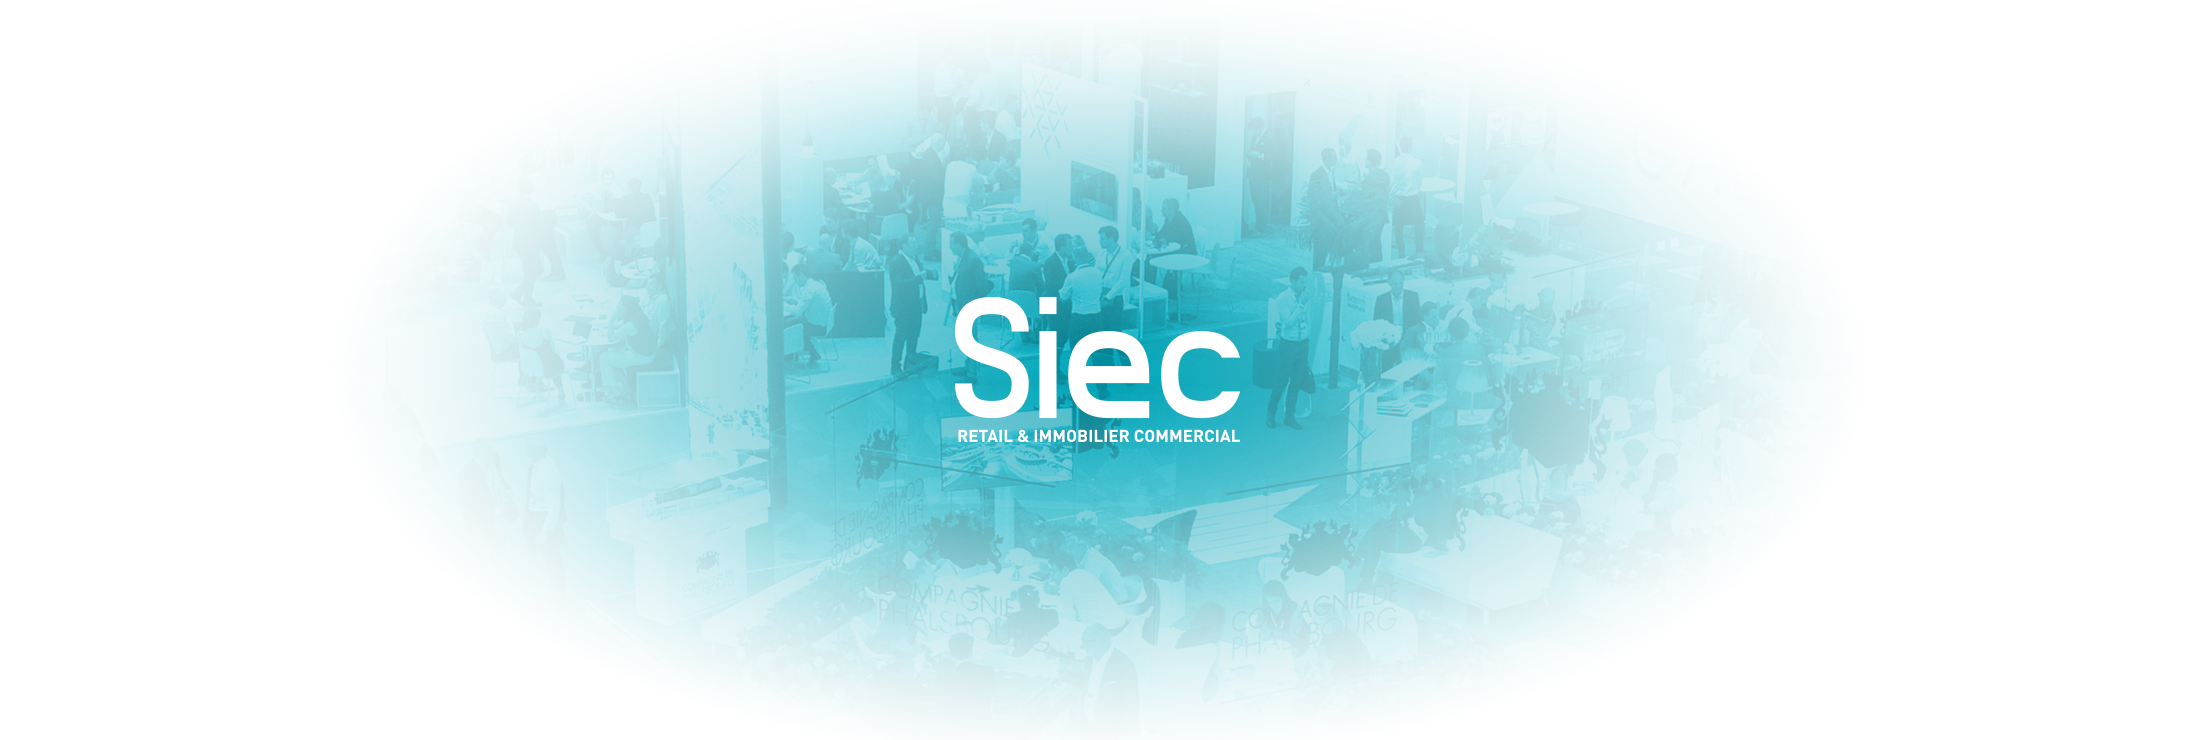 CNCC-osb-communication-web-siec